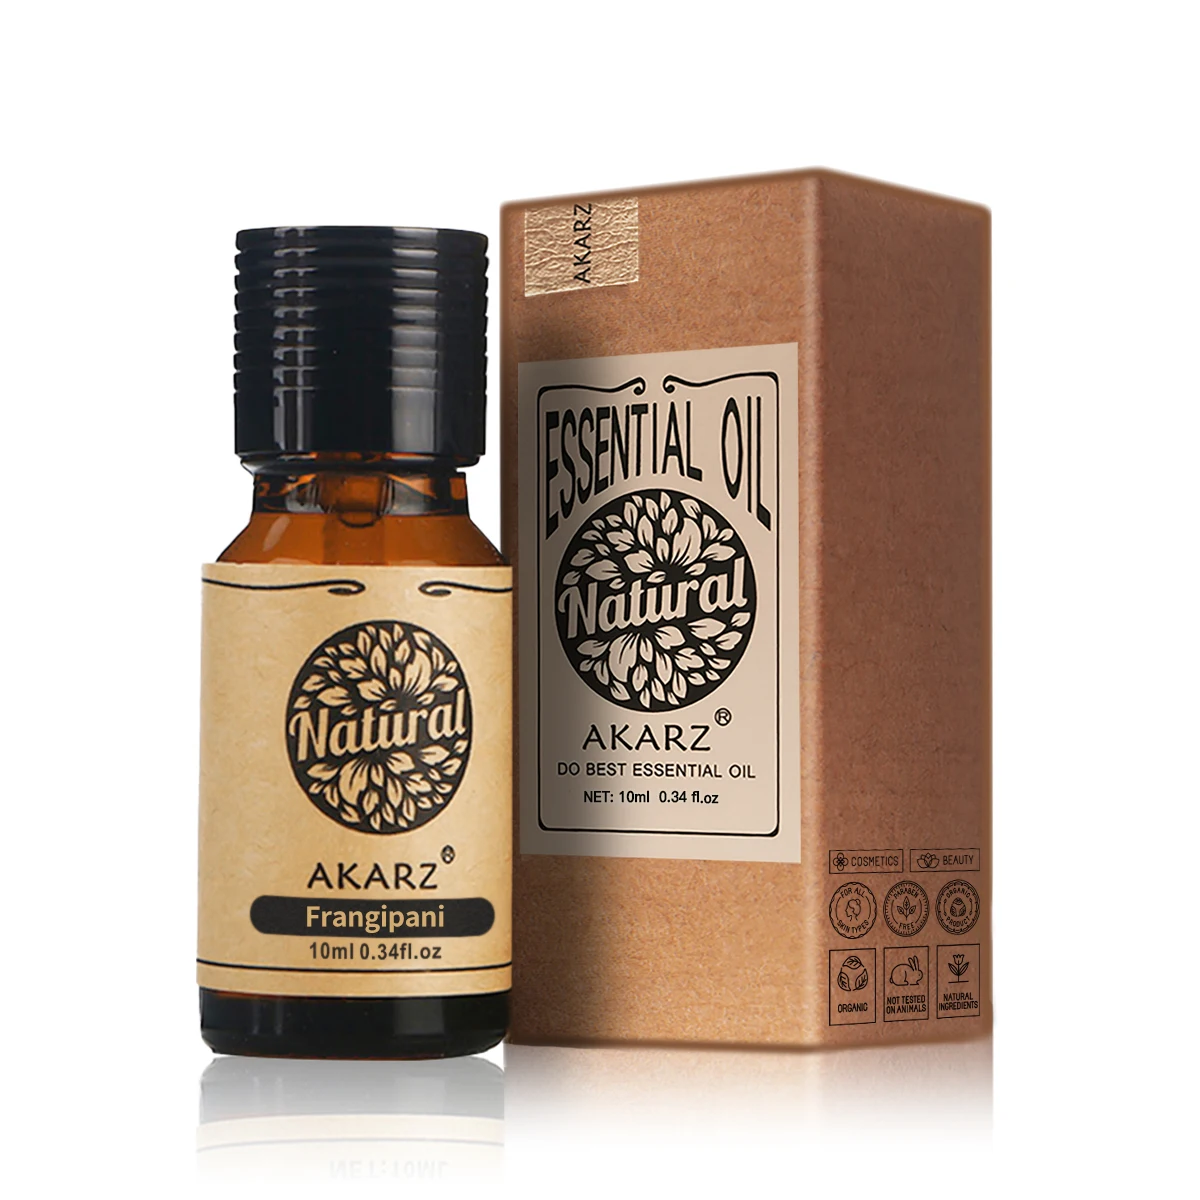 AKARZ Frangipani Essential Oil Natural Aromatherapy Relax Releasing Senses Prevent Dry Skin Frangipani Oil harmonized senses